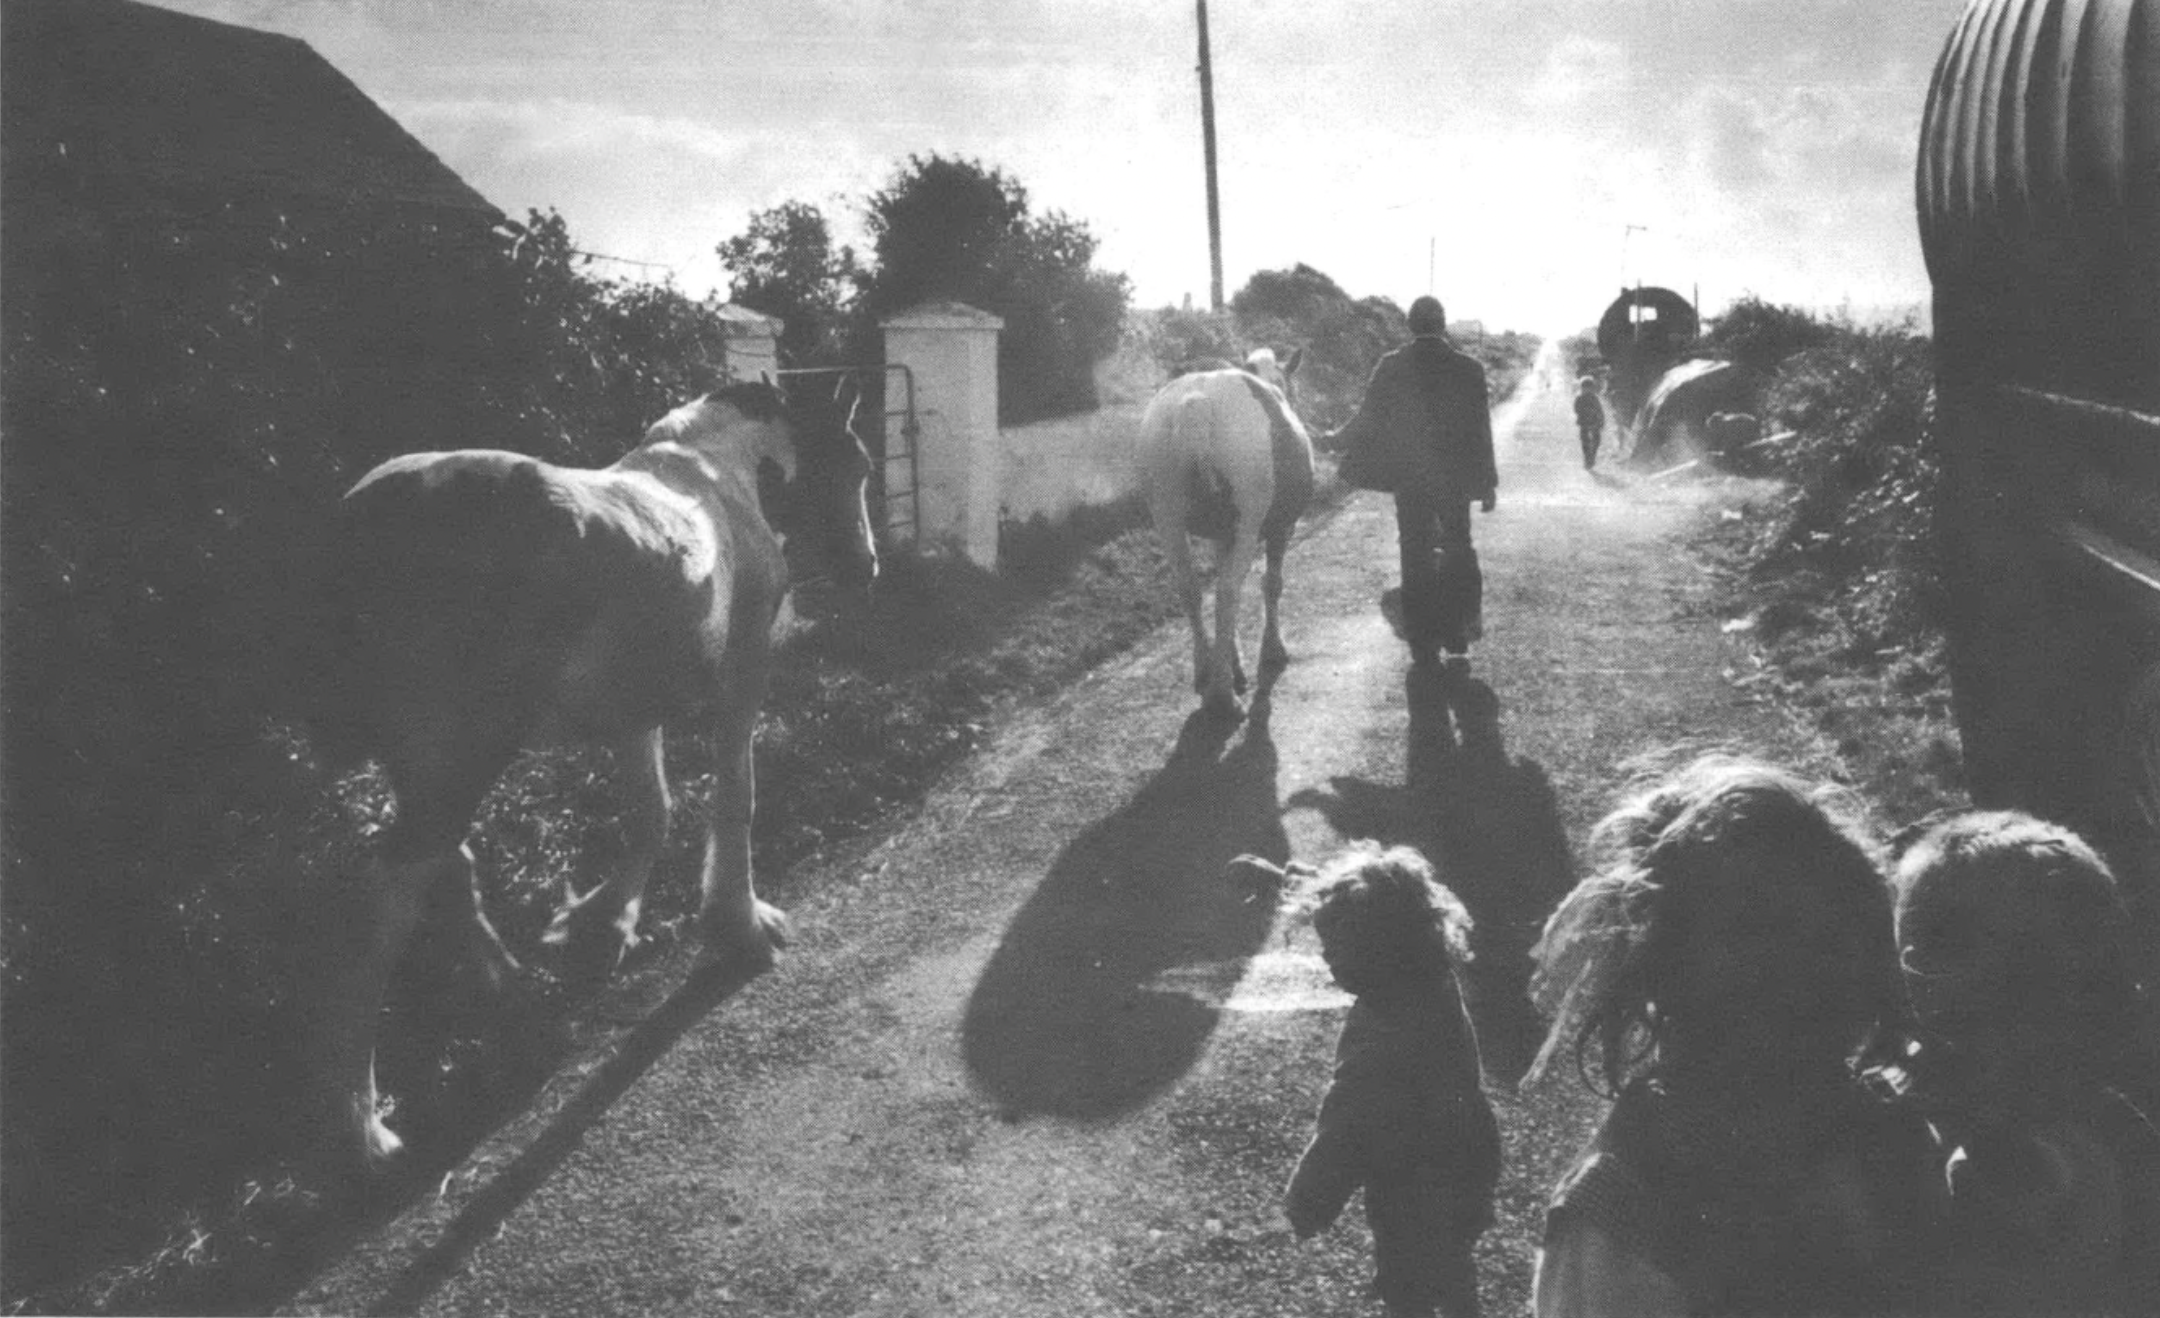 man and children walking alongside horses